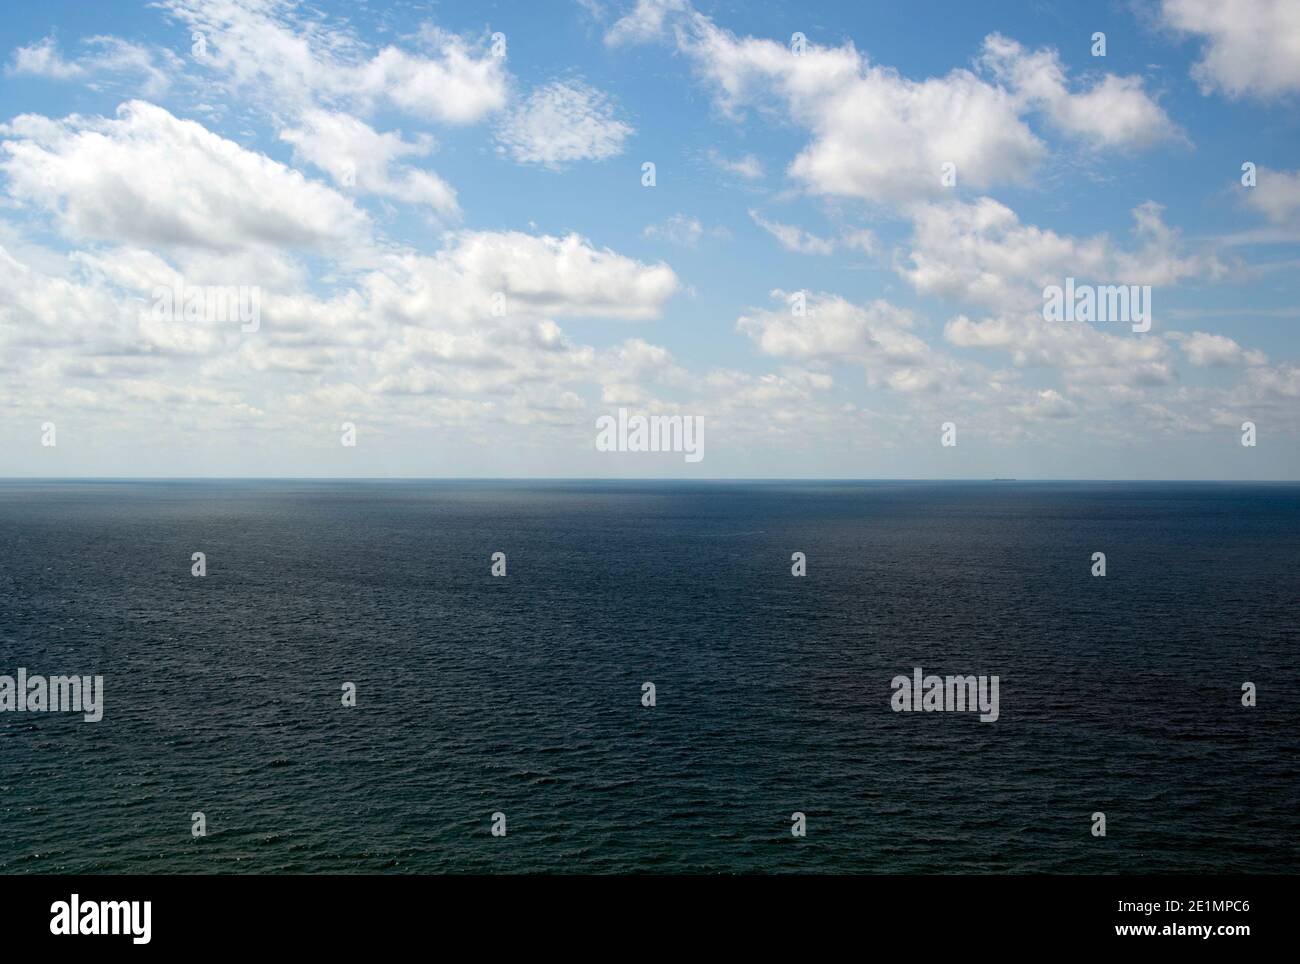 Des nuages qui s'envolent sur la mer Noire. Banque D'Images